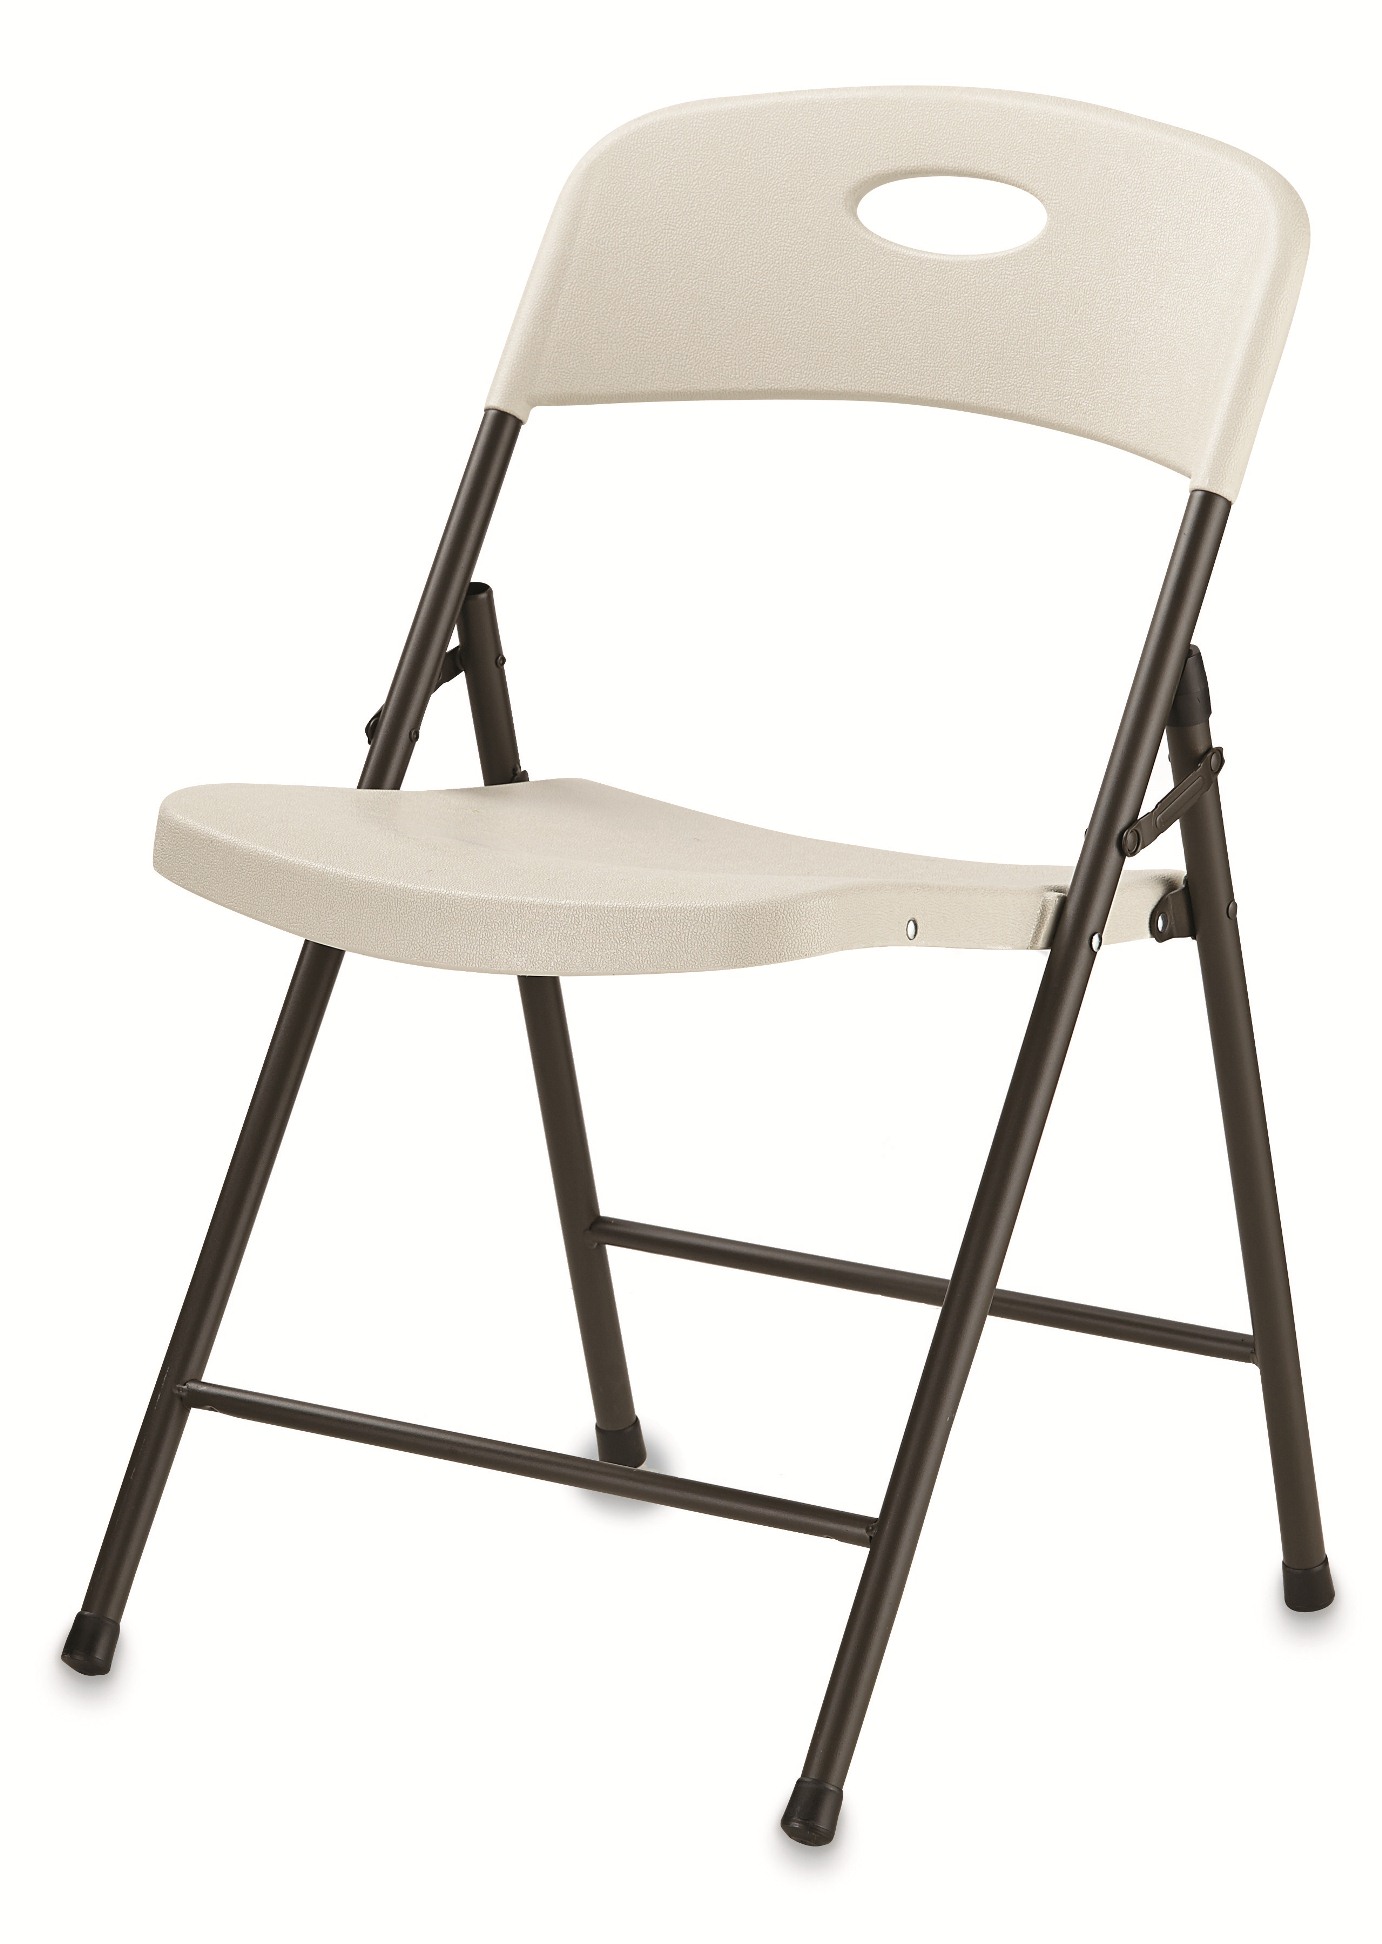 craftsman quad chair